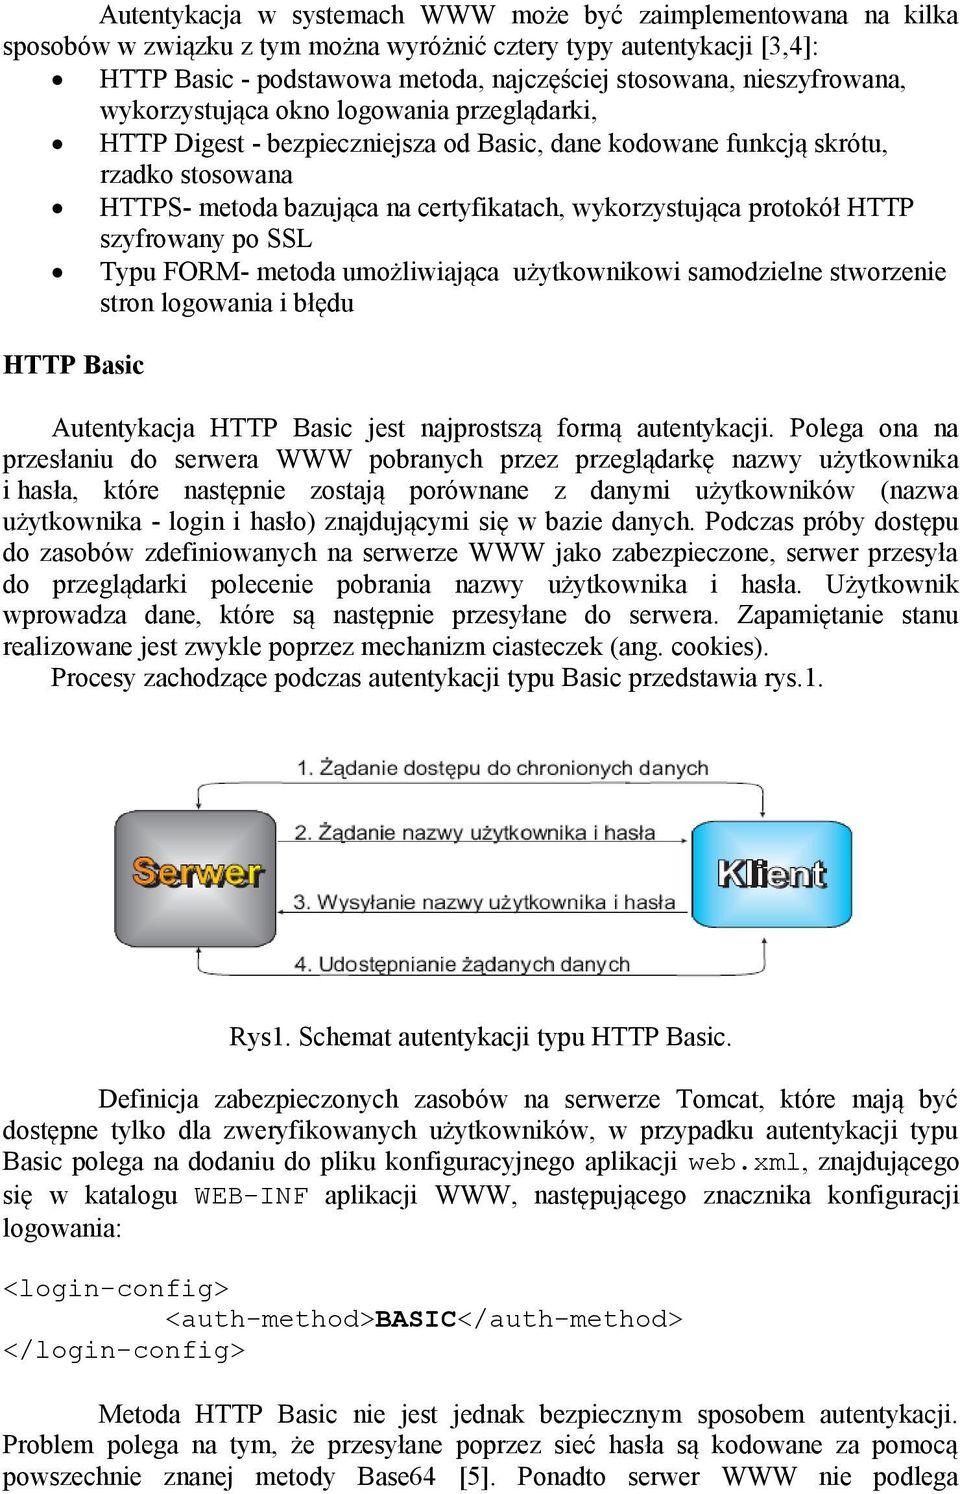 wykorzystująca protokół HTTP szyfrowany po SSL Typu FORM- metoda umożliwiająca użytkownikowi samodzielne stworzenie stron logowania i błędu HTTP Basic Autentykacja HTTP Basic jest najprostszą formą